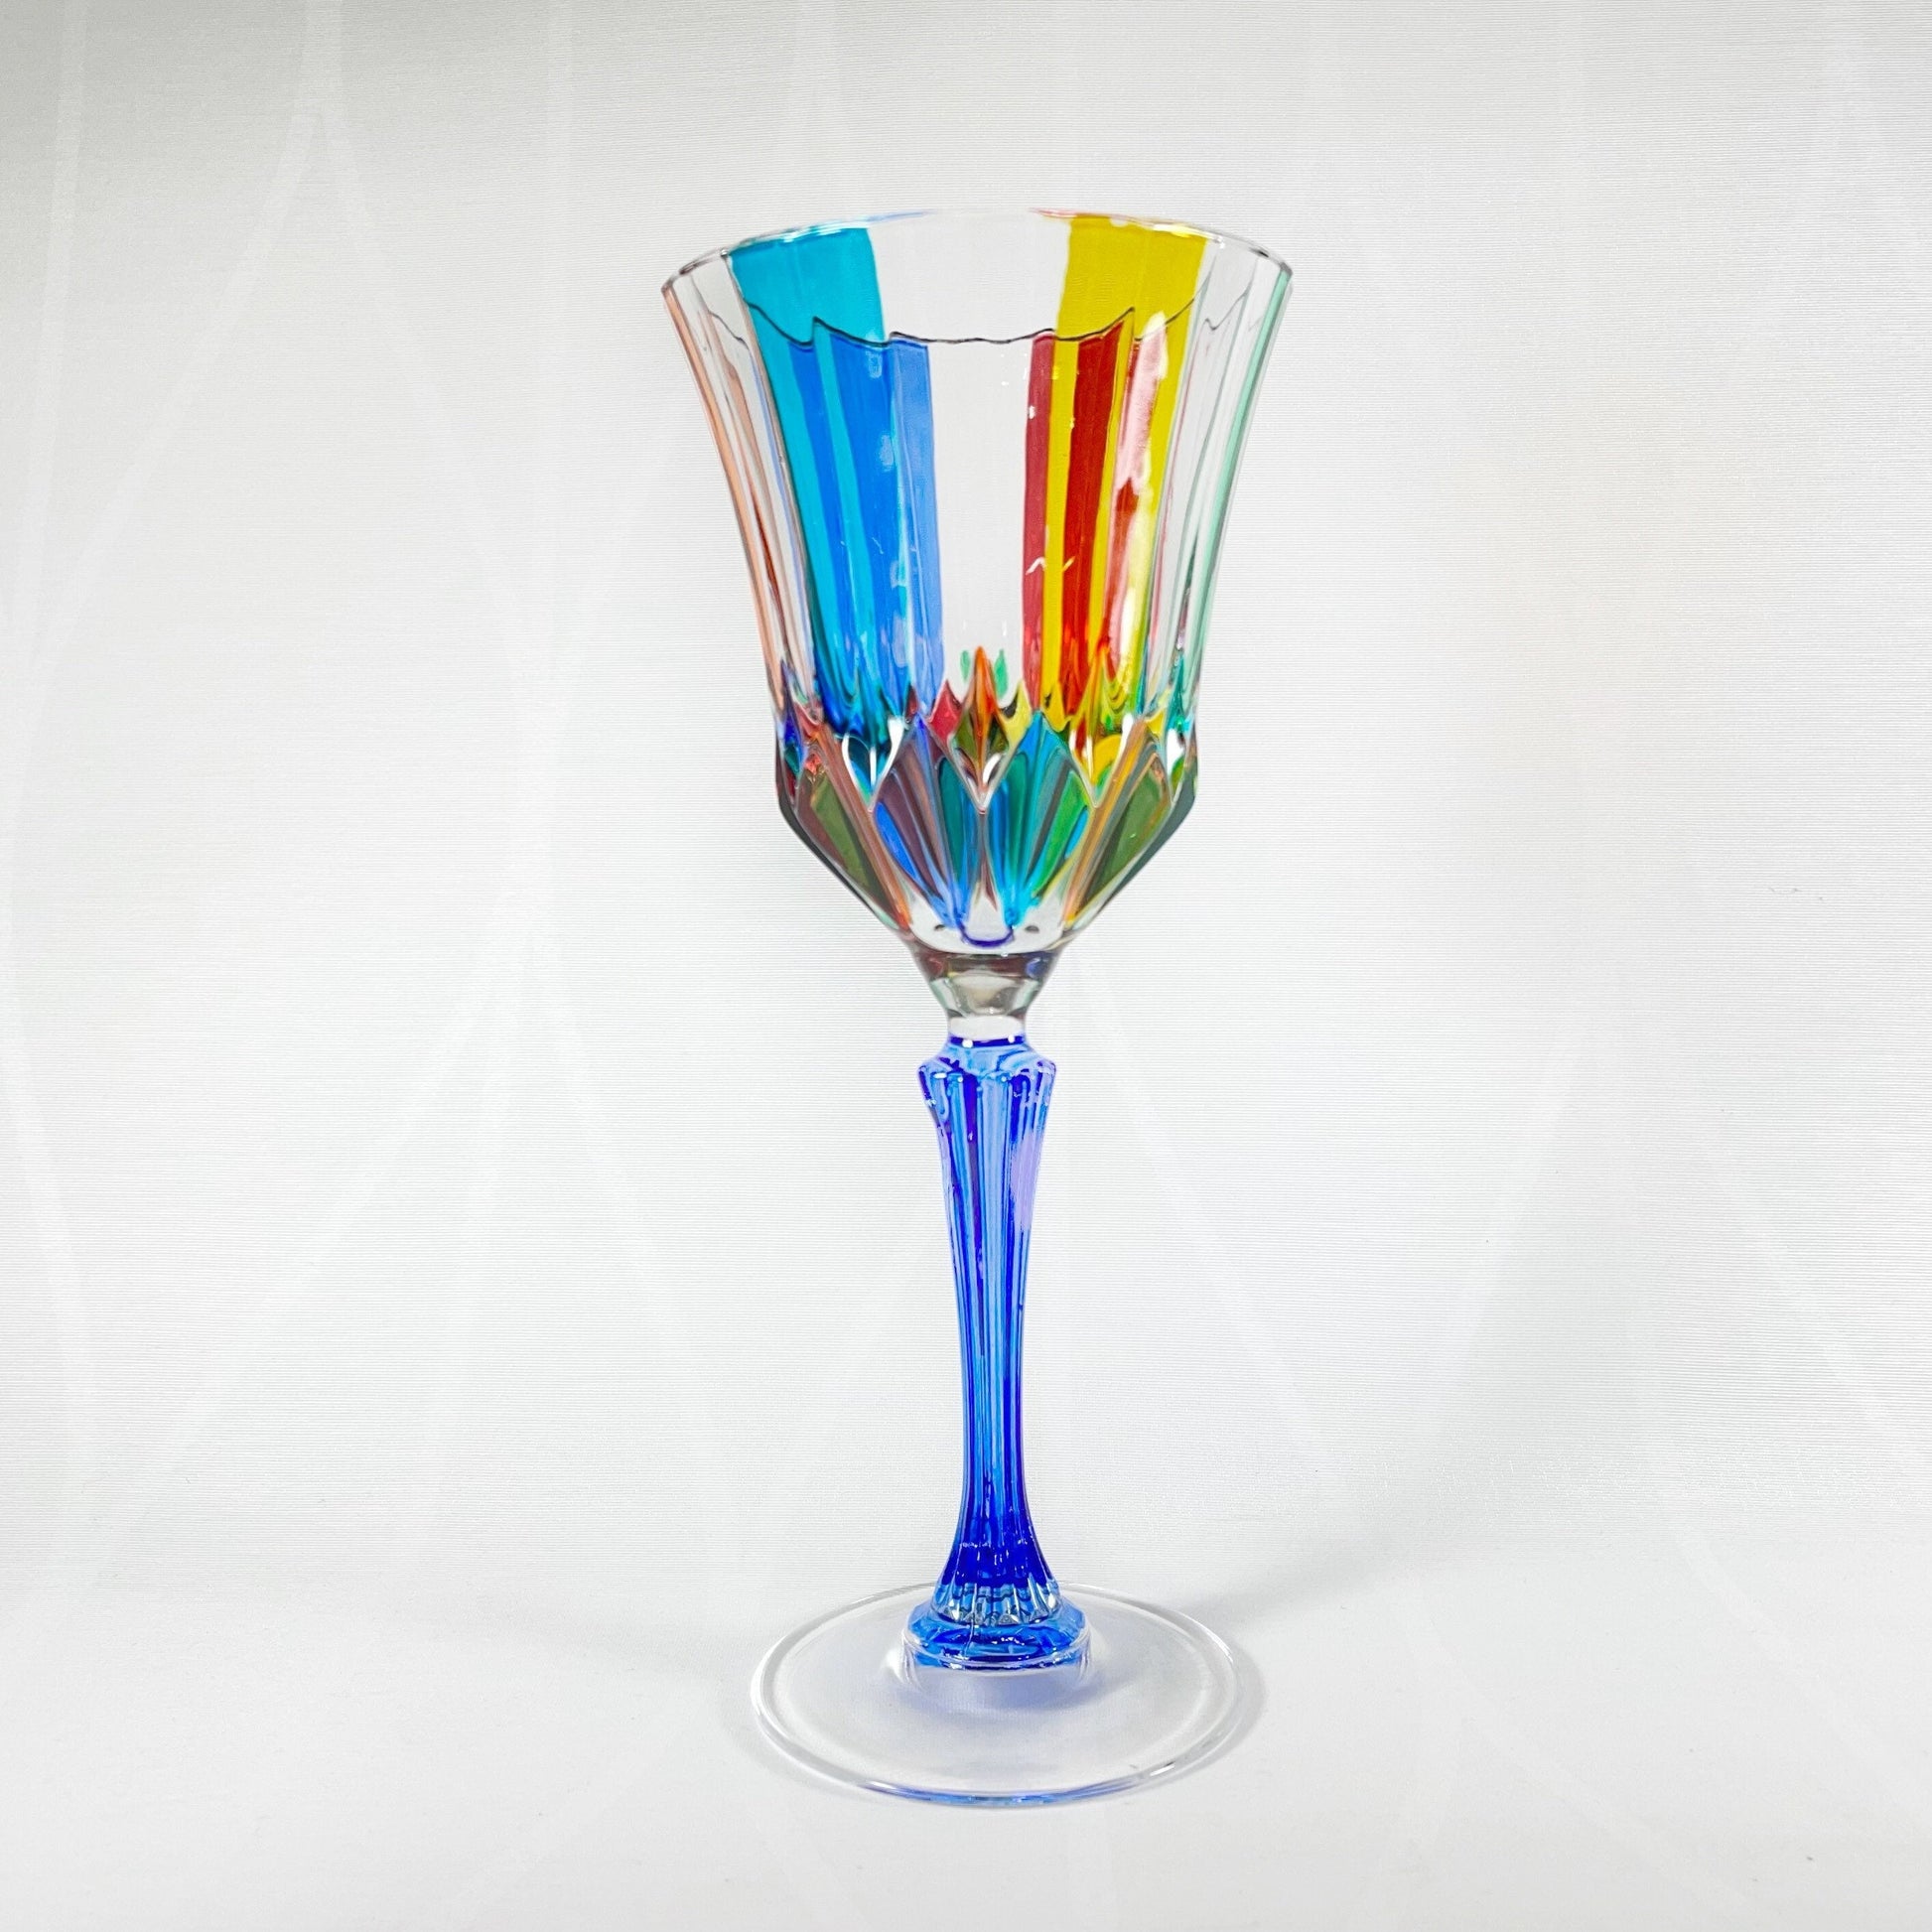 Venetian Glass Adagio Wine Glass - Handmade in Italy, Colorful Murano Glass